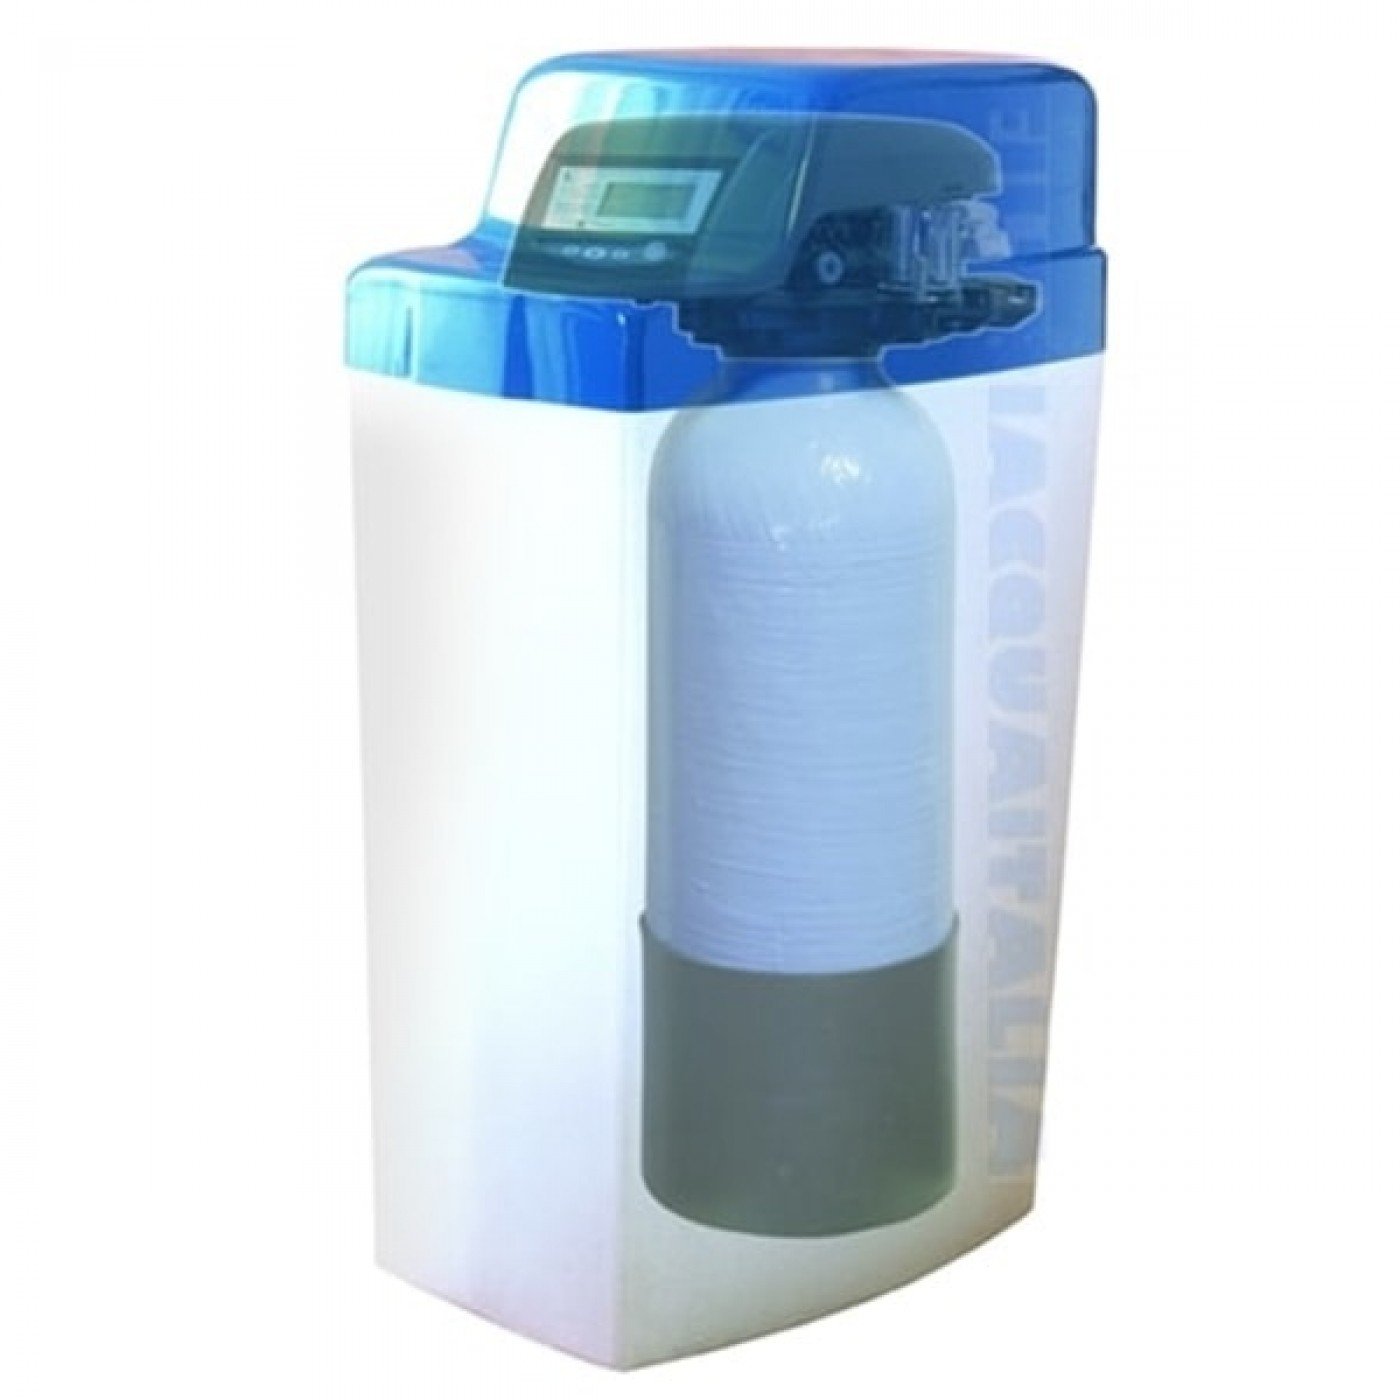 Acquista Hydrator da 1 gallone (Bottiglia)